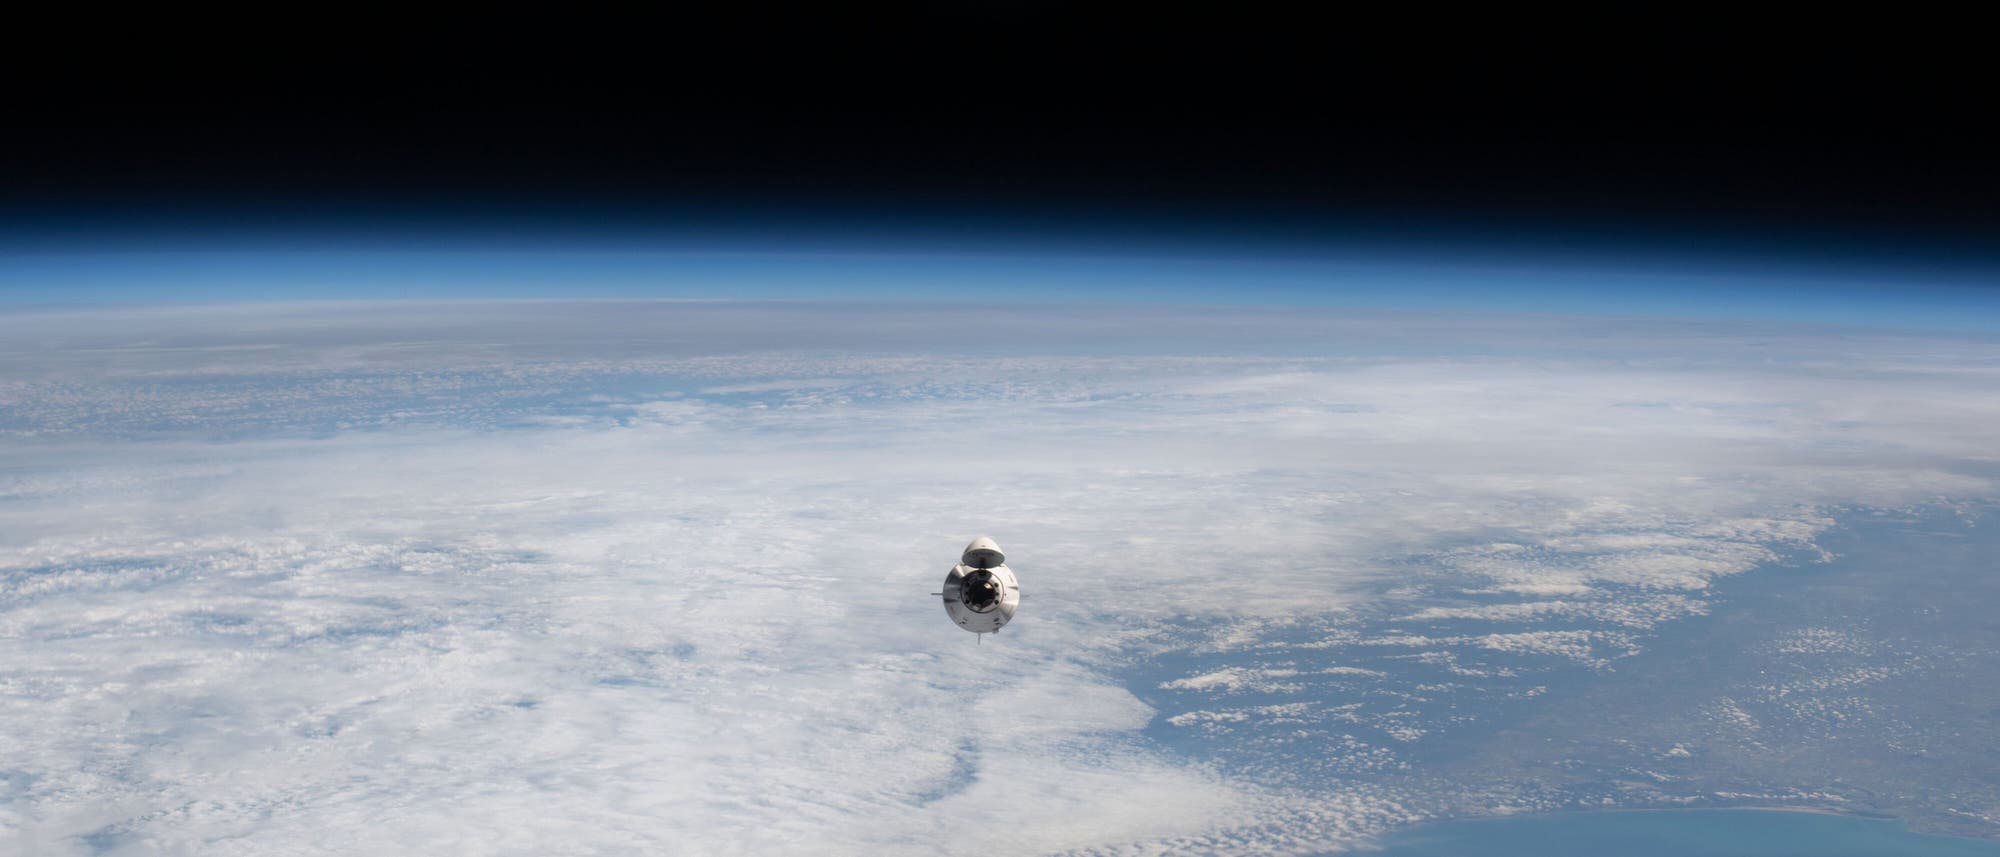 Die Firma Axiom hat in einer Space-X-Kapsel Weltraumtouristen zur ISS gebracht.